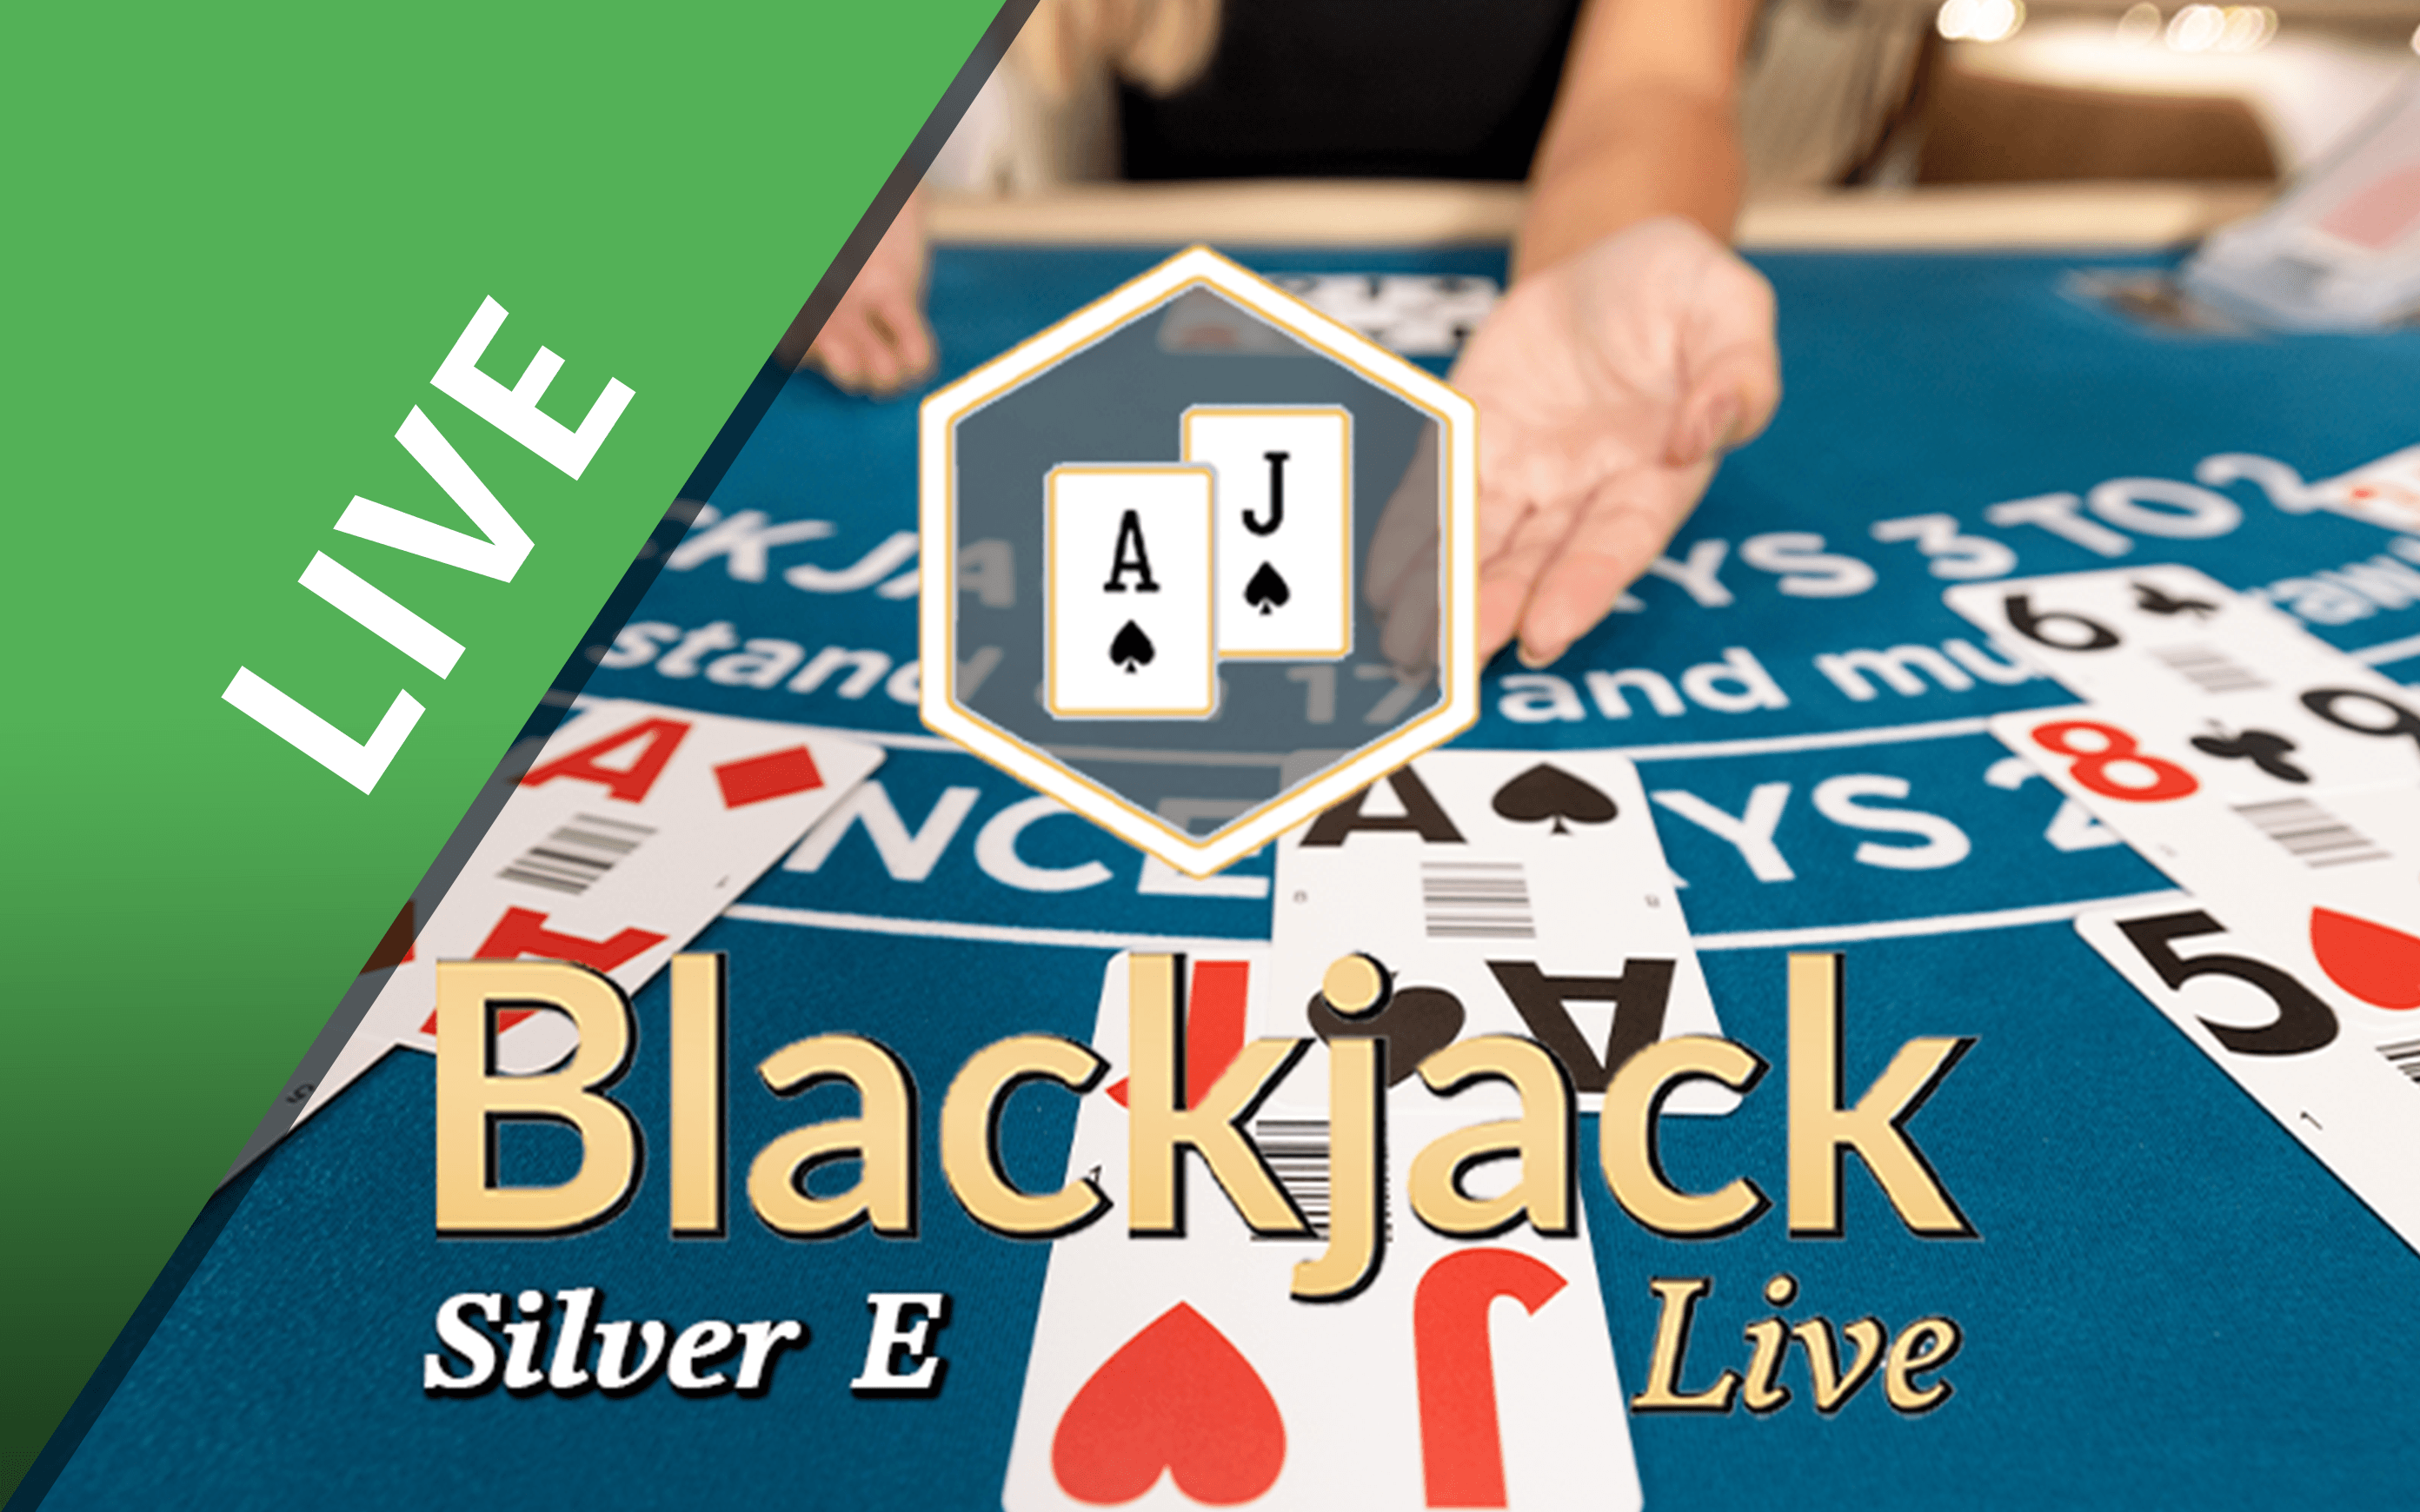 Gioca a Blackjack Silver E sul casino online Starcasino.be